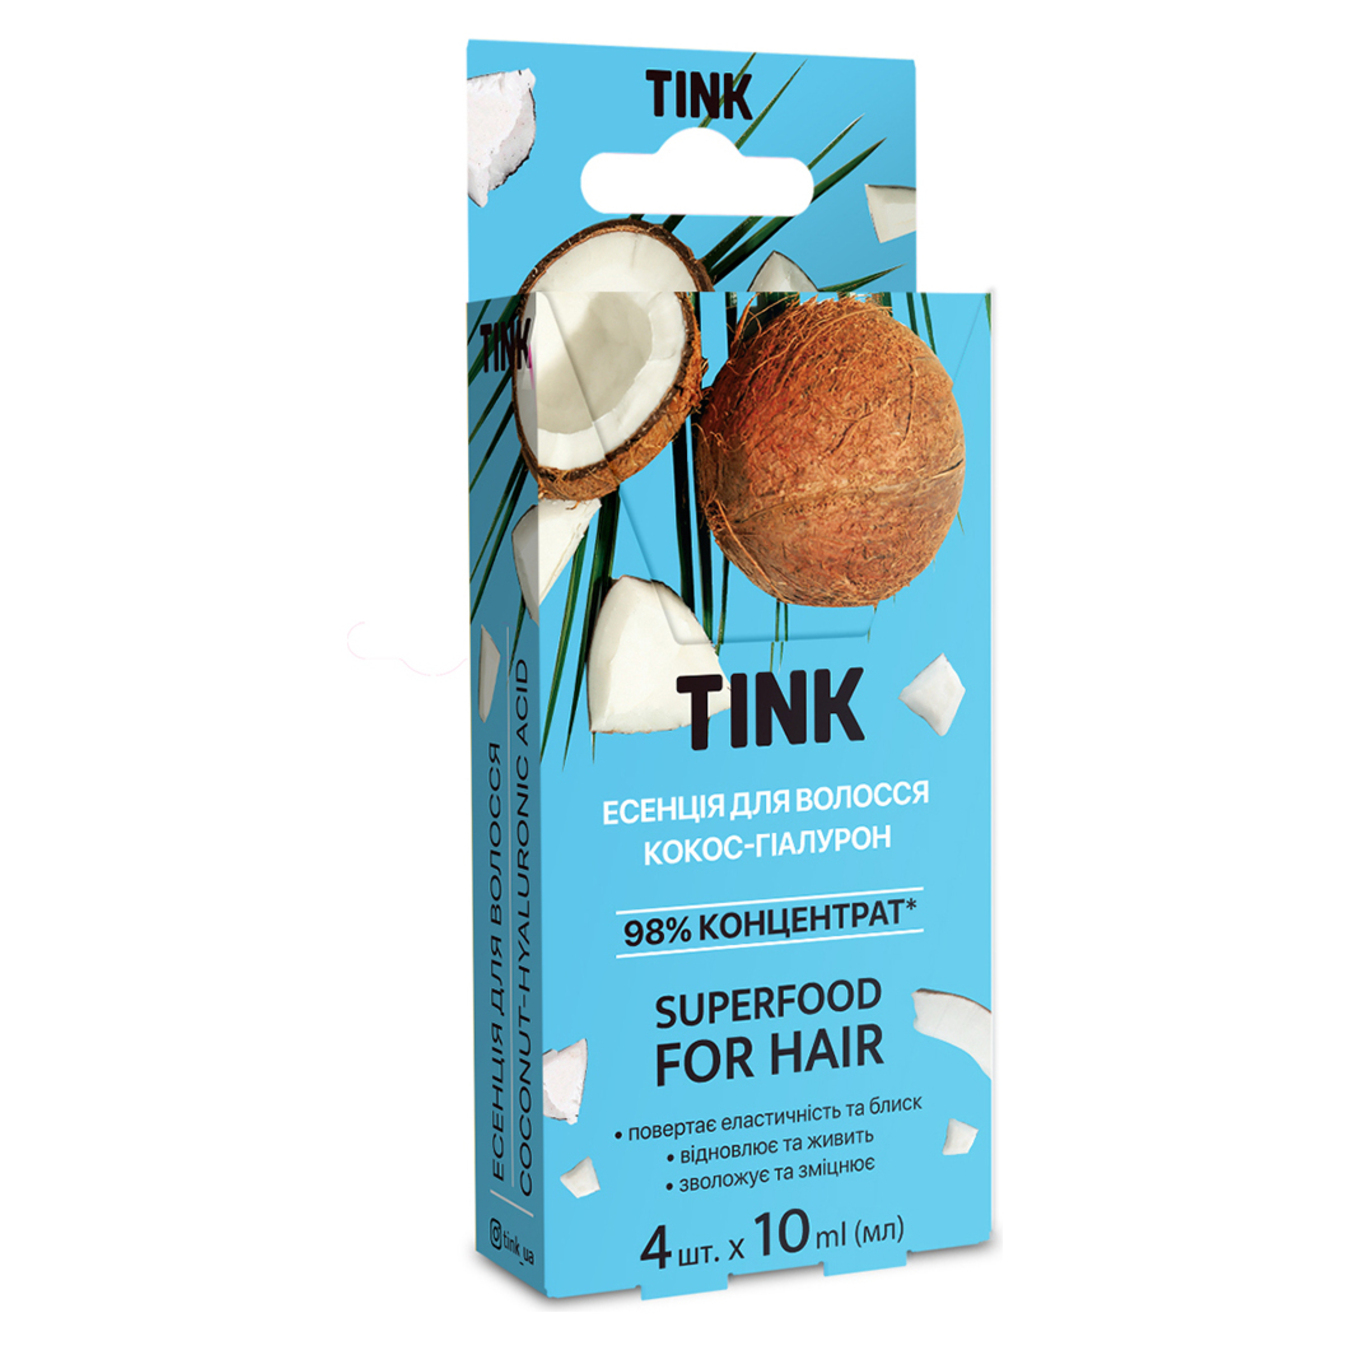 Есенція Tink Кокос-гіалурон для волосся концентрована 4*10мл